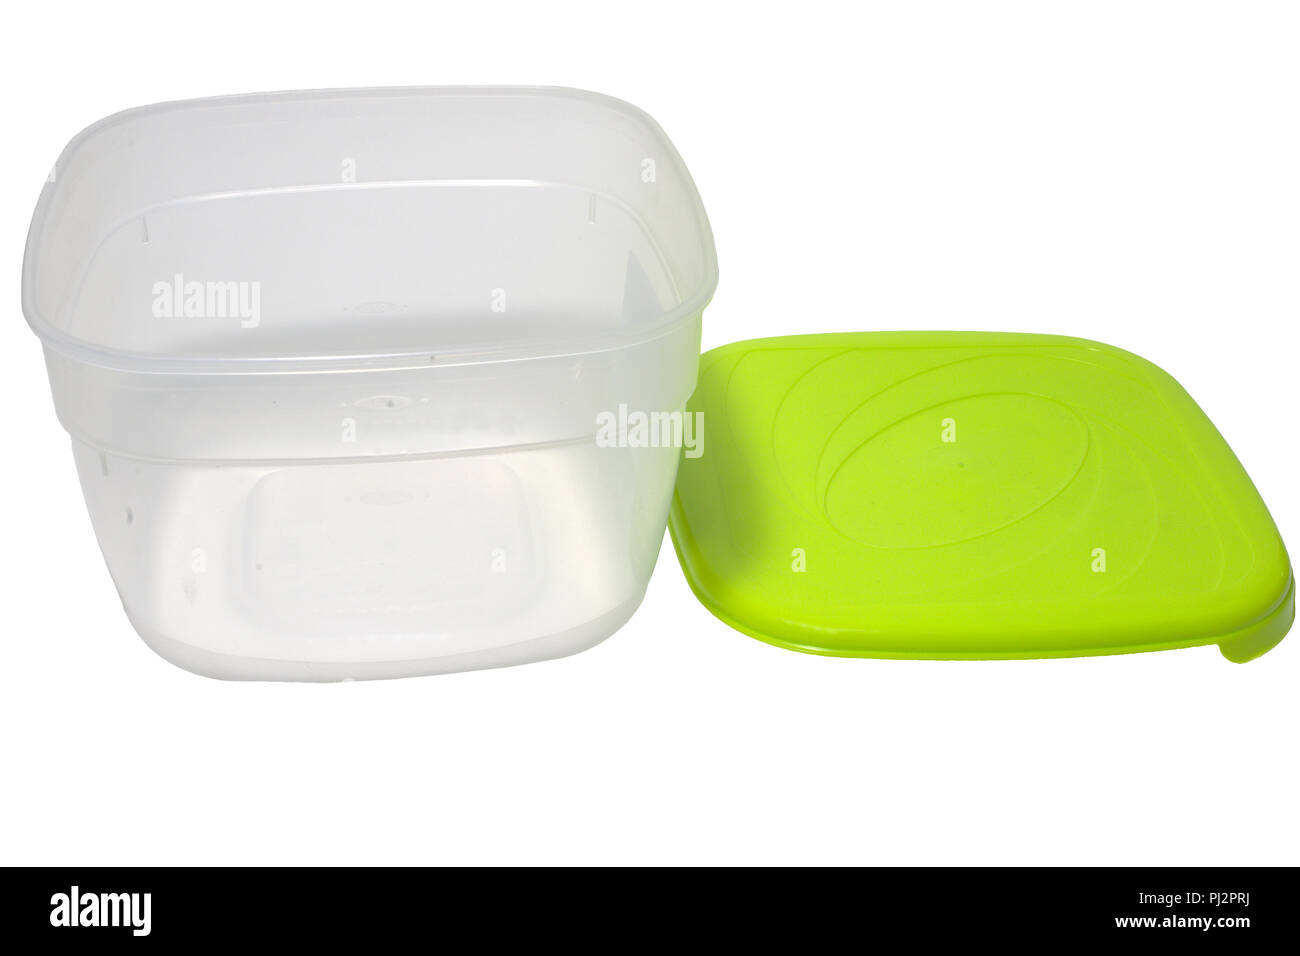 Lunch Box, für einfachen Transport und Mikrowelle Erhitzen von  Lebensmitteln konzipiert. transparenten Plastikbehälter mit Enganliegenden  grün Deckel Stockfotografie - Alamy